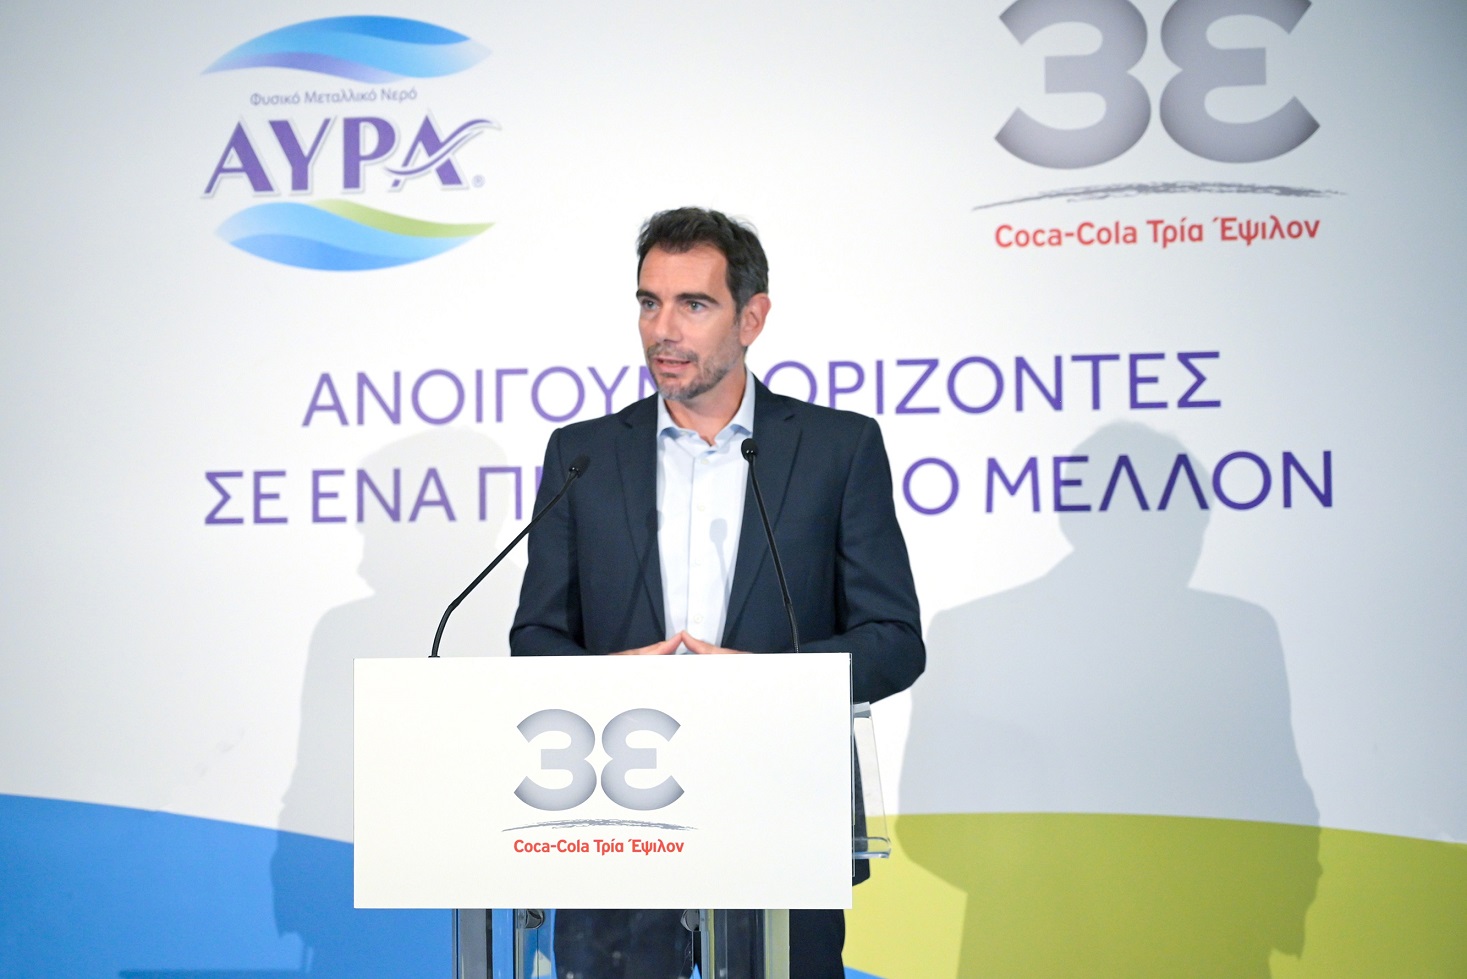 Γιώργος Χαντουμάκος, Διευθυντής Εφοδιαστικής Αλυσίδας της Coca-Cola Τρία Έψιλον για Ελλάδα & Κύπρο